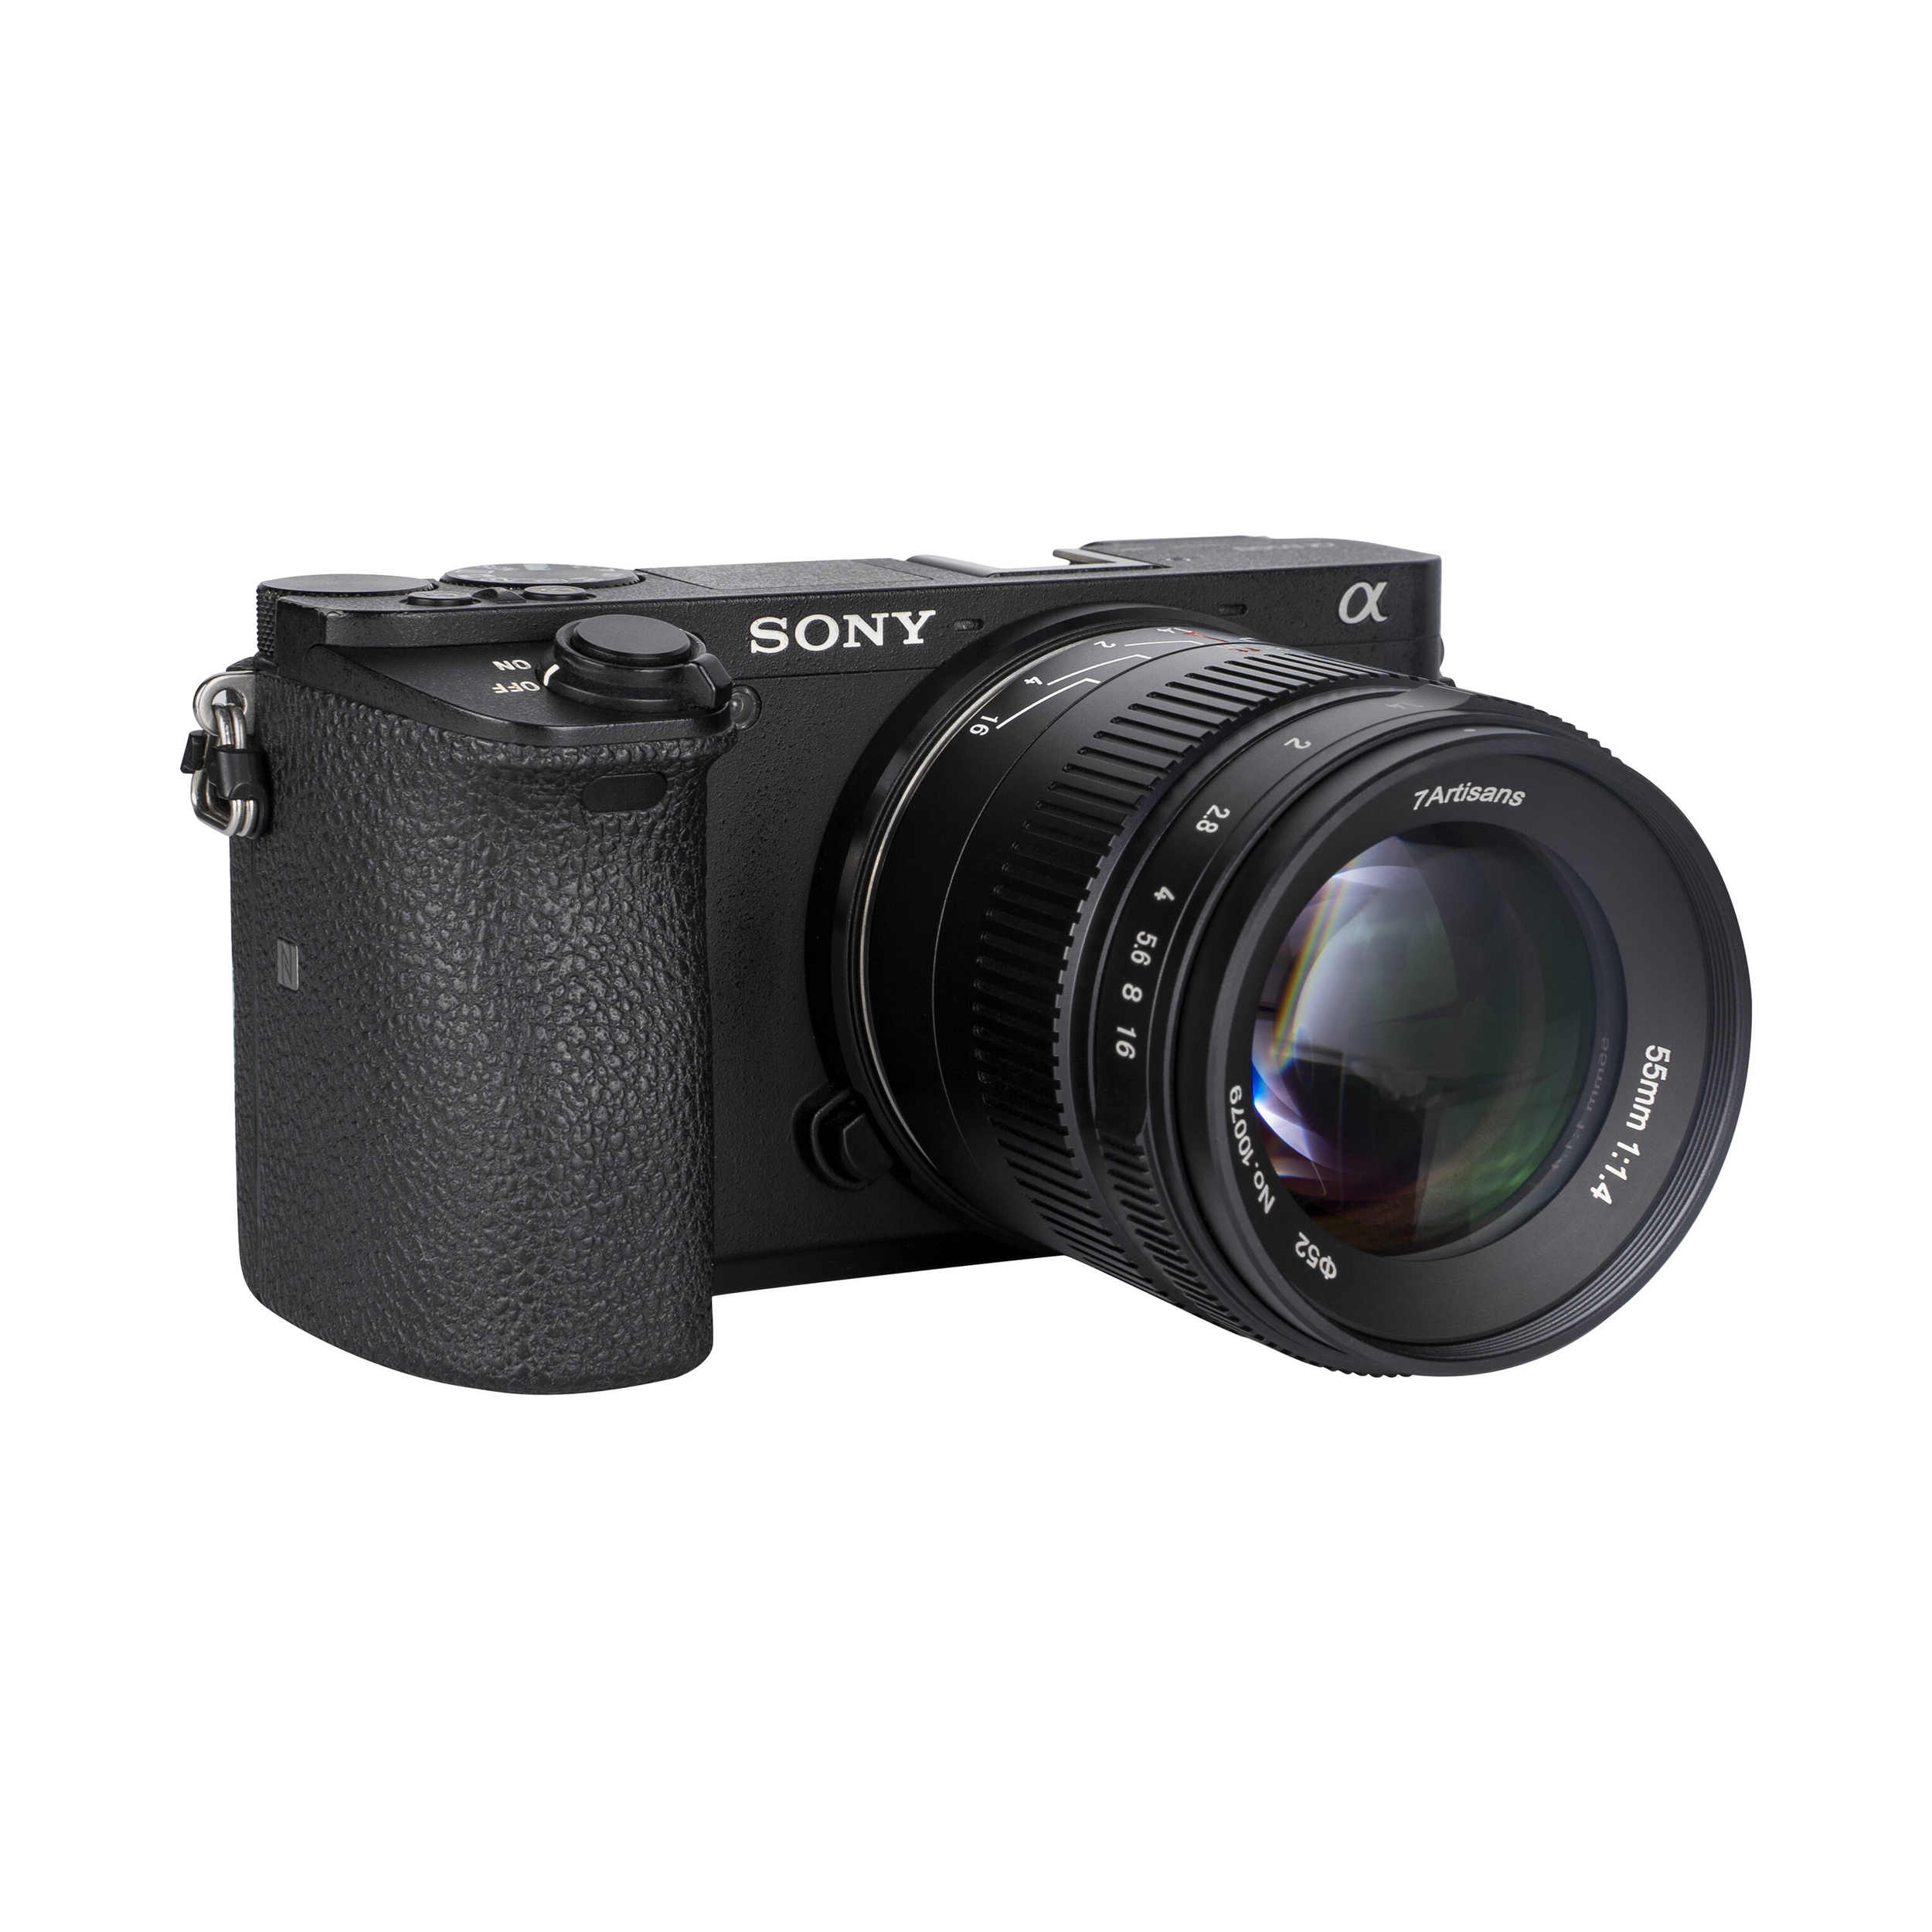 7artisans Photoelectric 55mm f/1.4 Mark II Lens for Sony E Mount